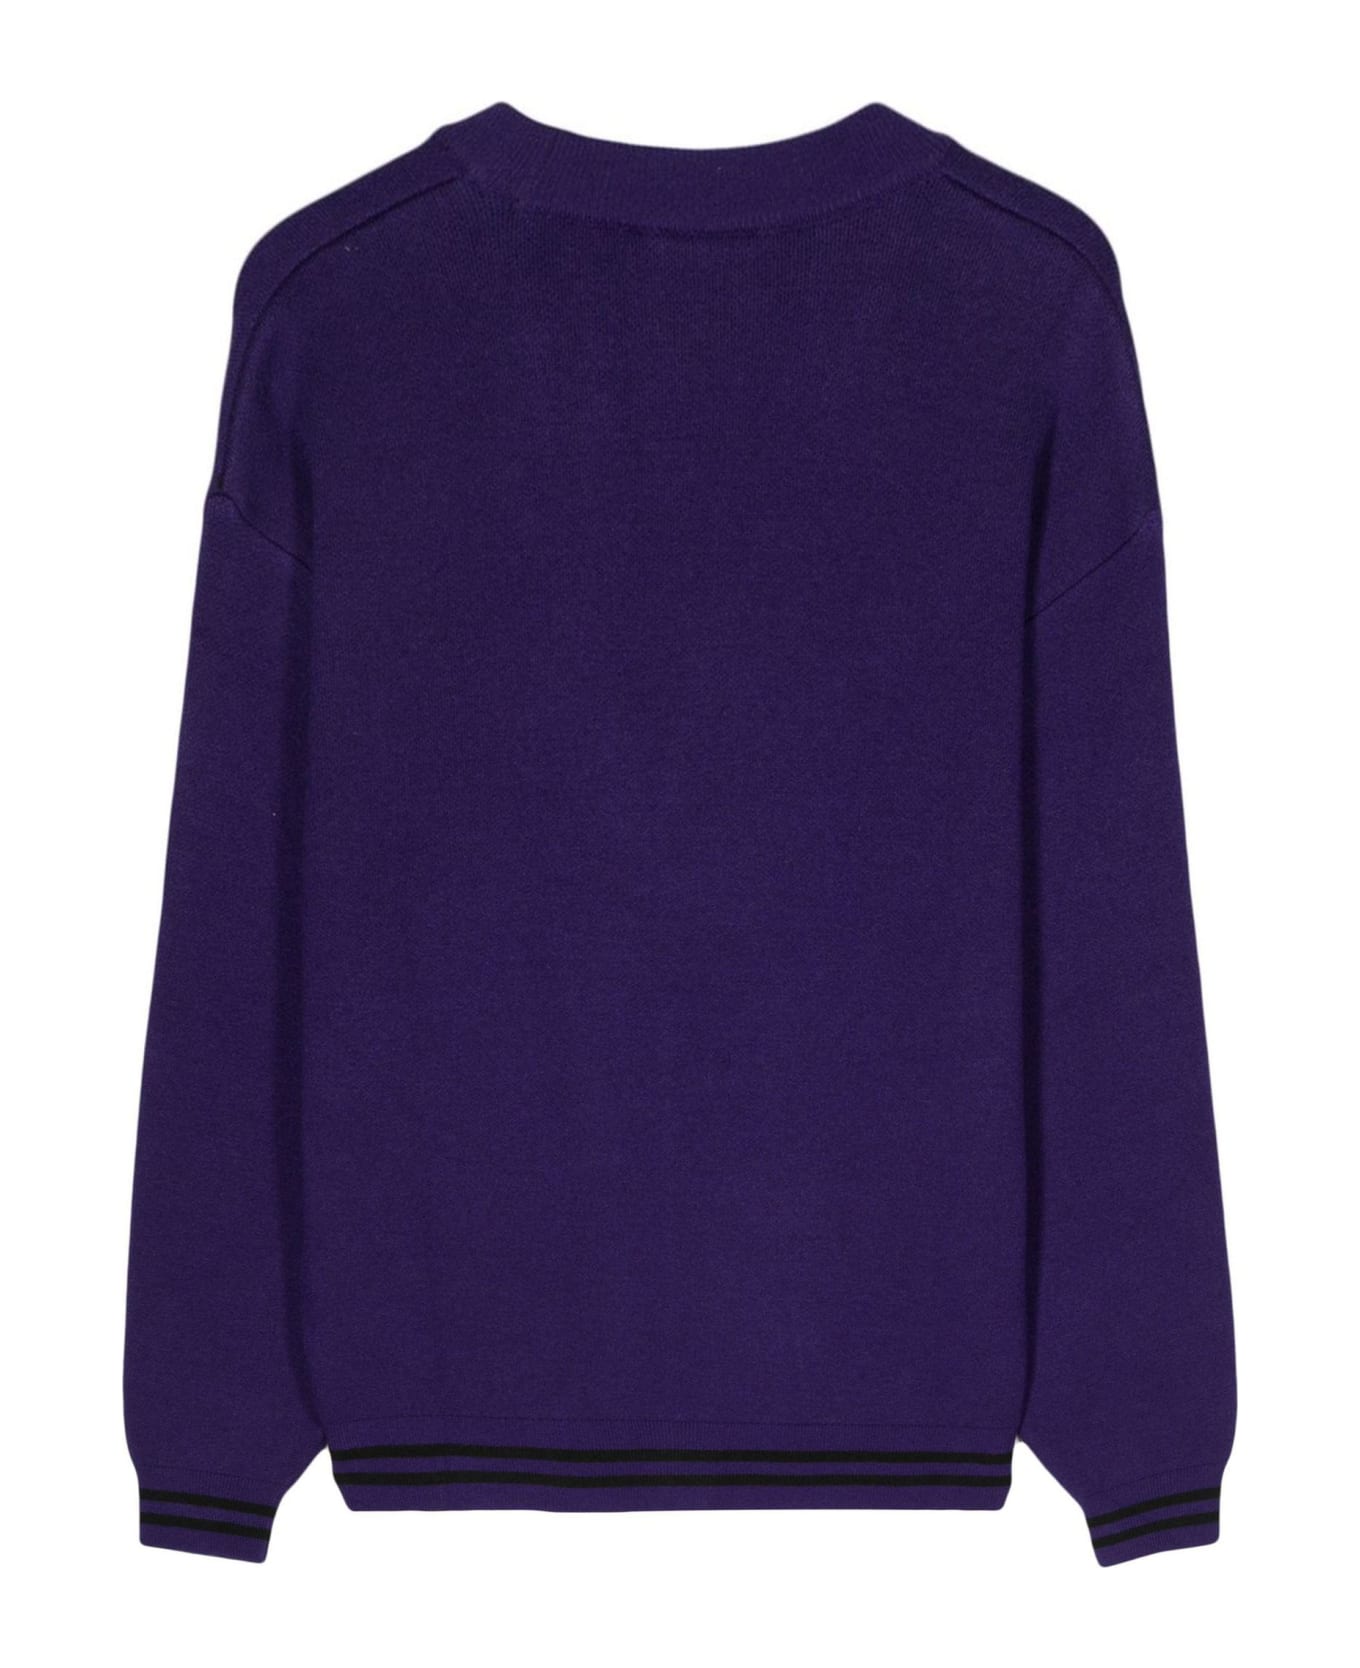 Carhartt Purple Onyx Knit Cardigan - Viola